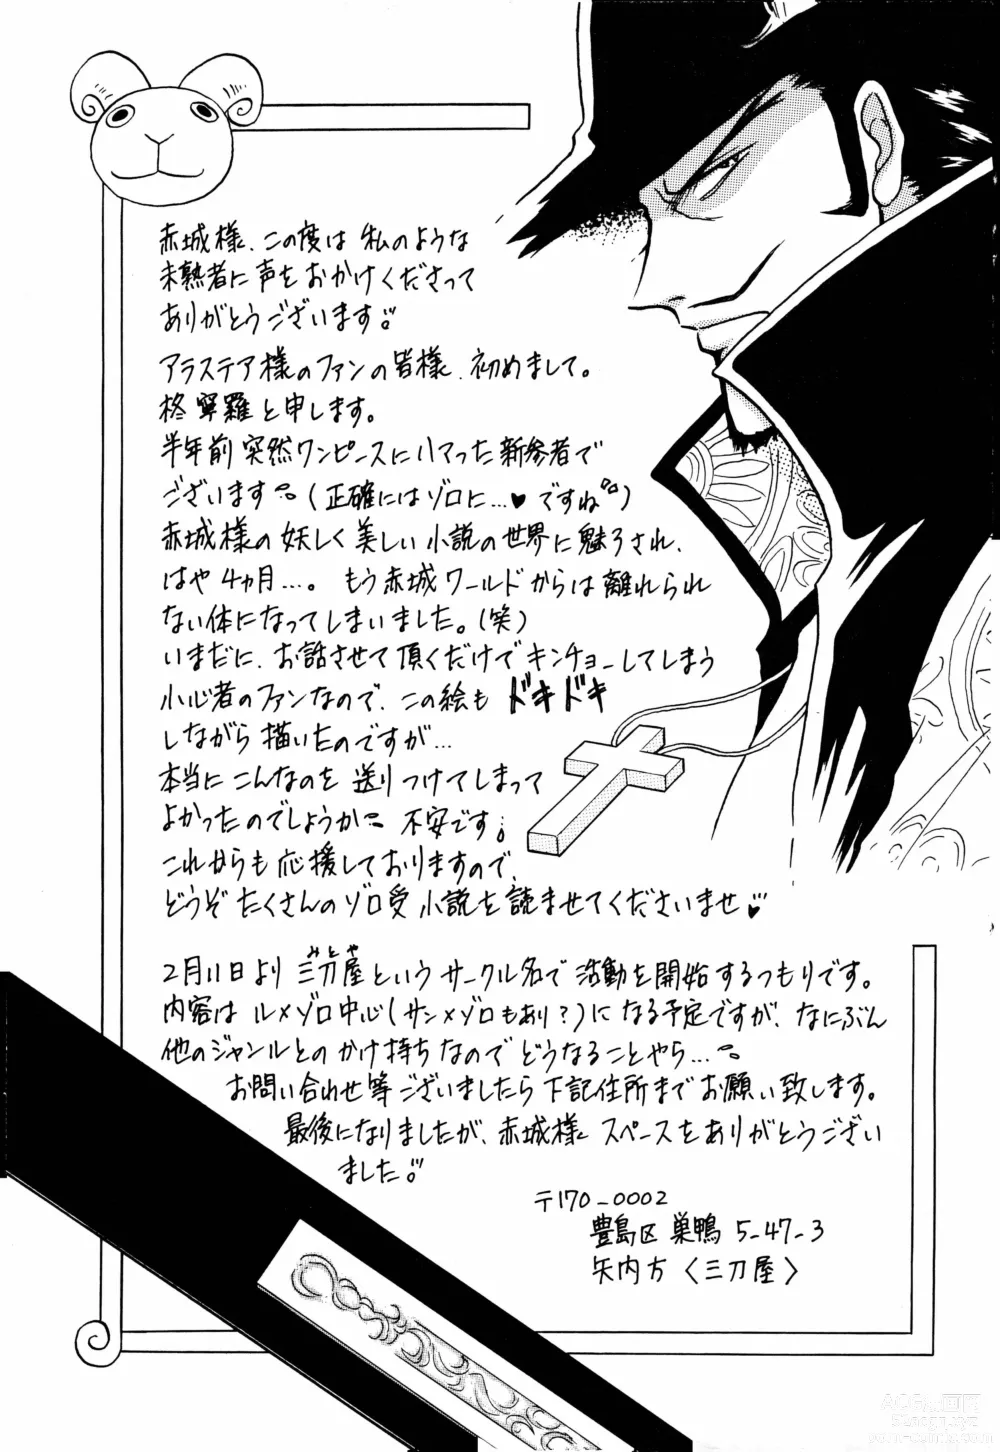 Page 96 of doujinshi Enshi Junjou Shounen